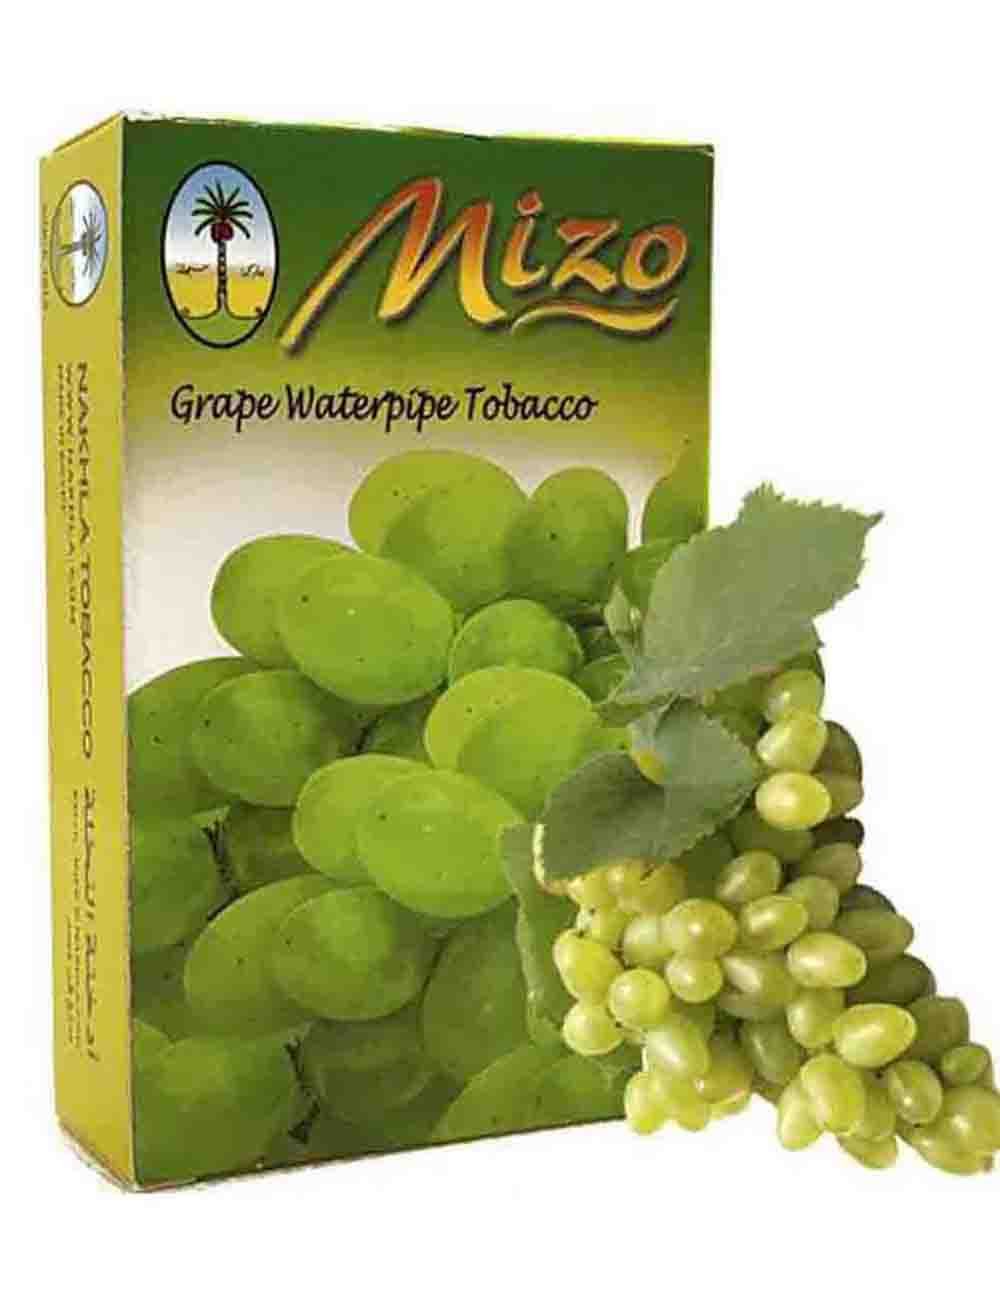 Mizo White Grape